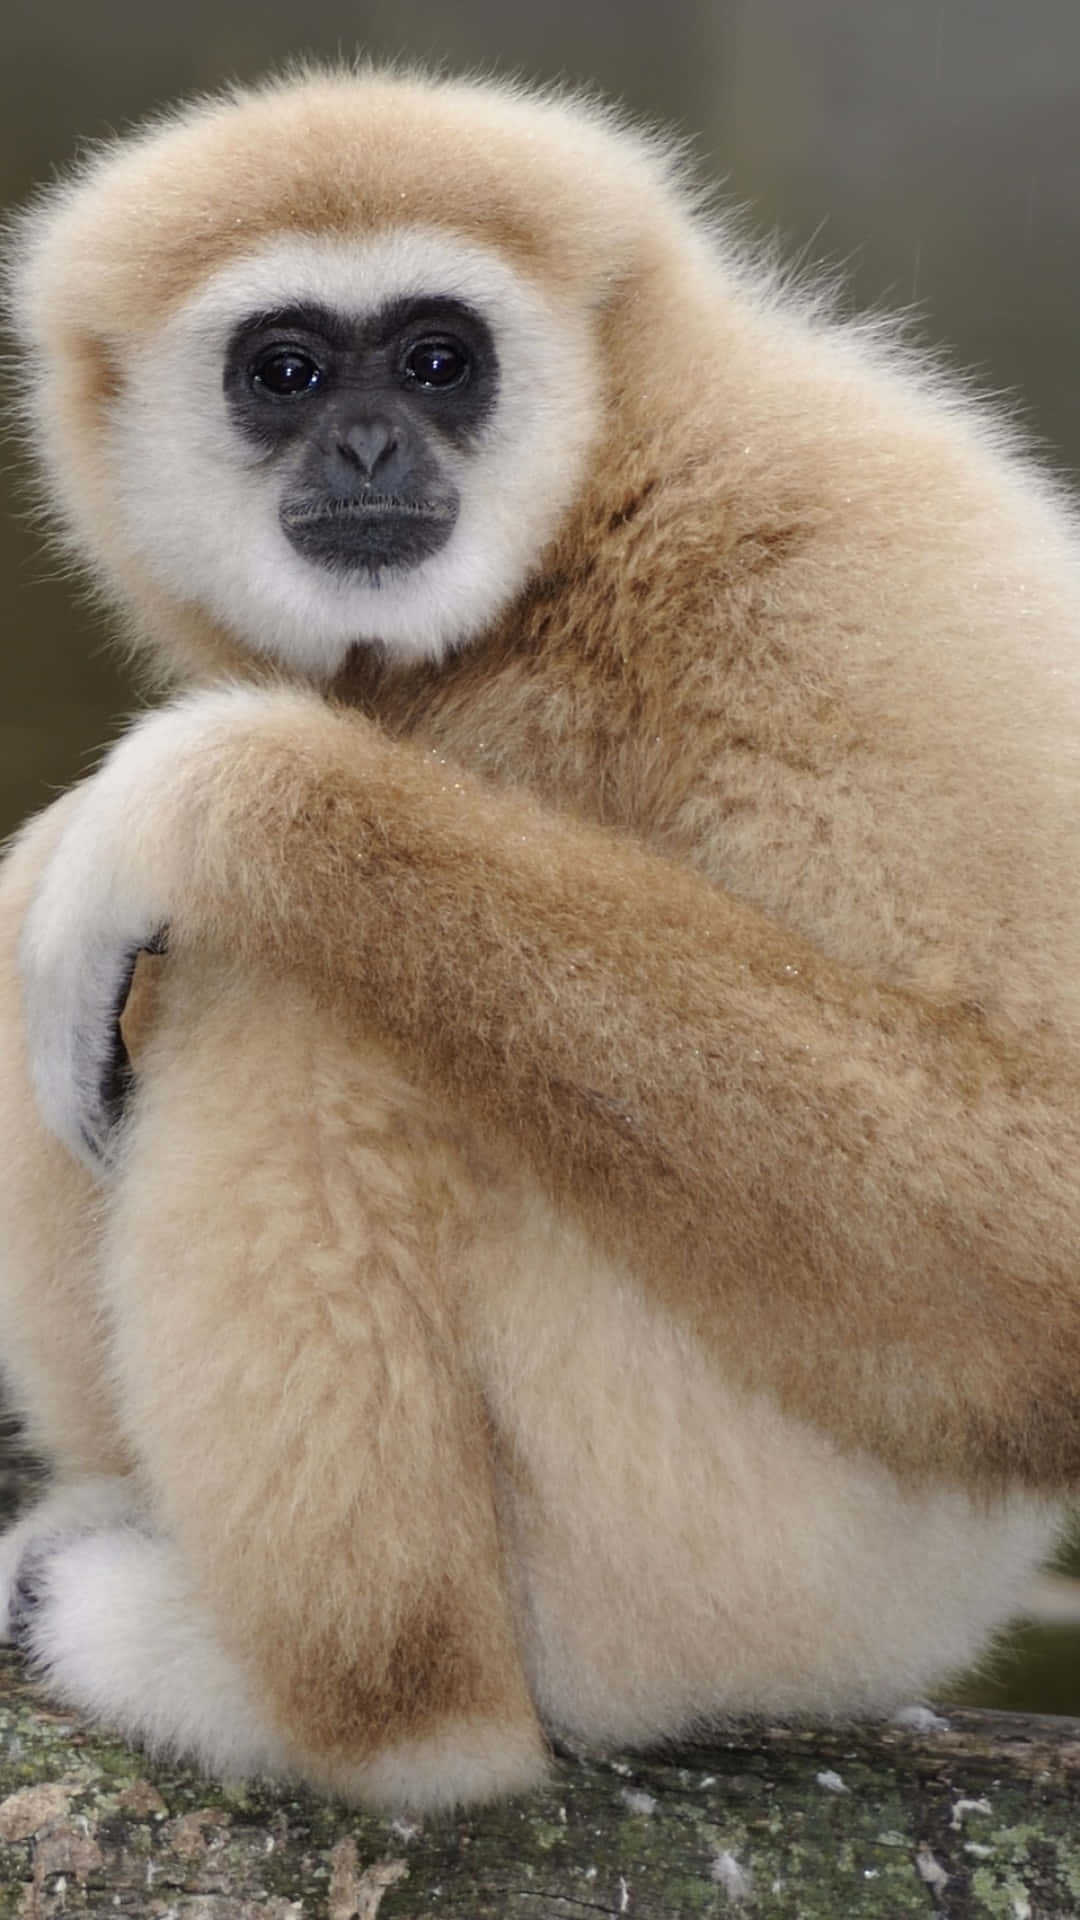 Iphonexs Bakgrundsbild Med En Gibbon Som Tittar Åt Sidan.